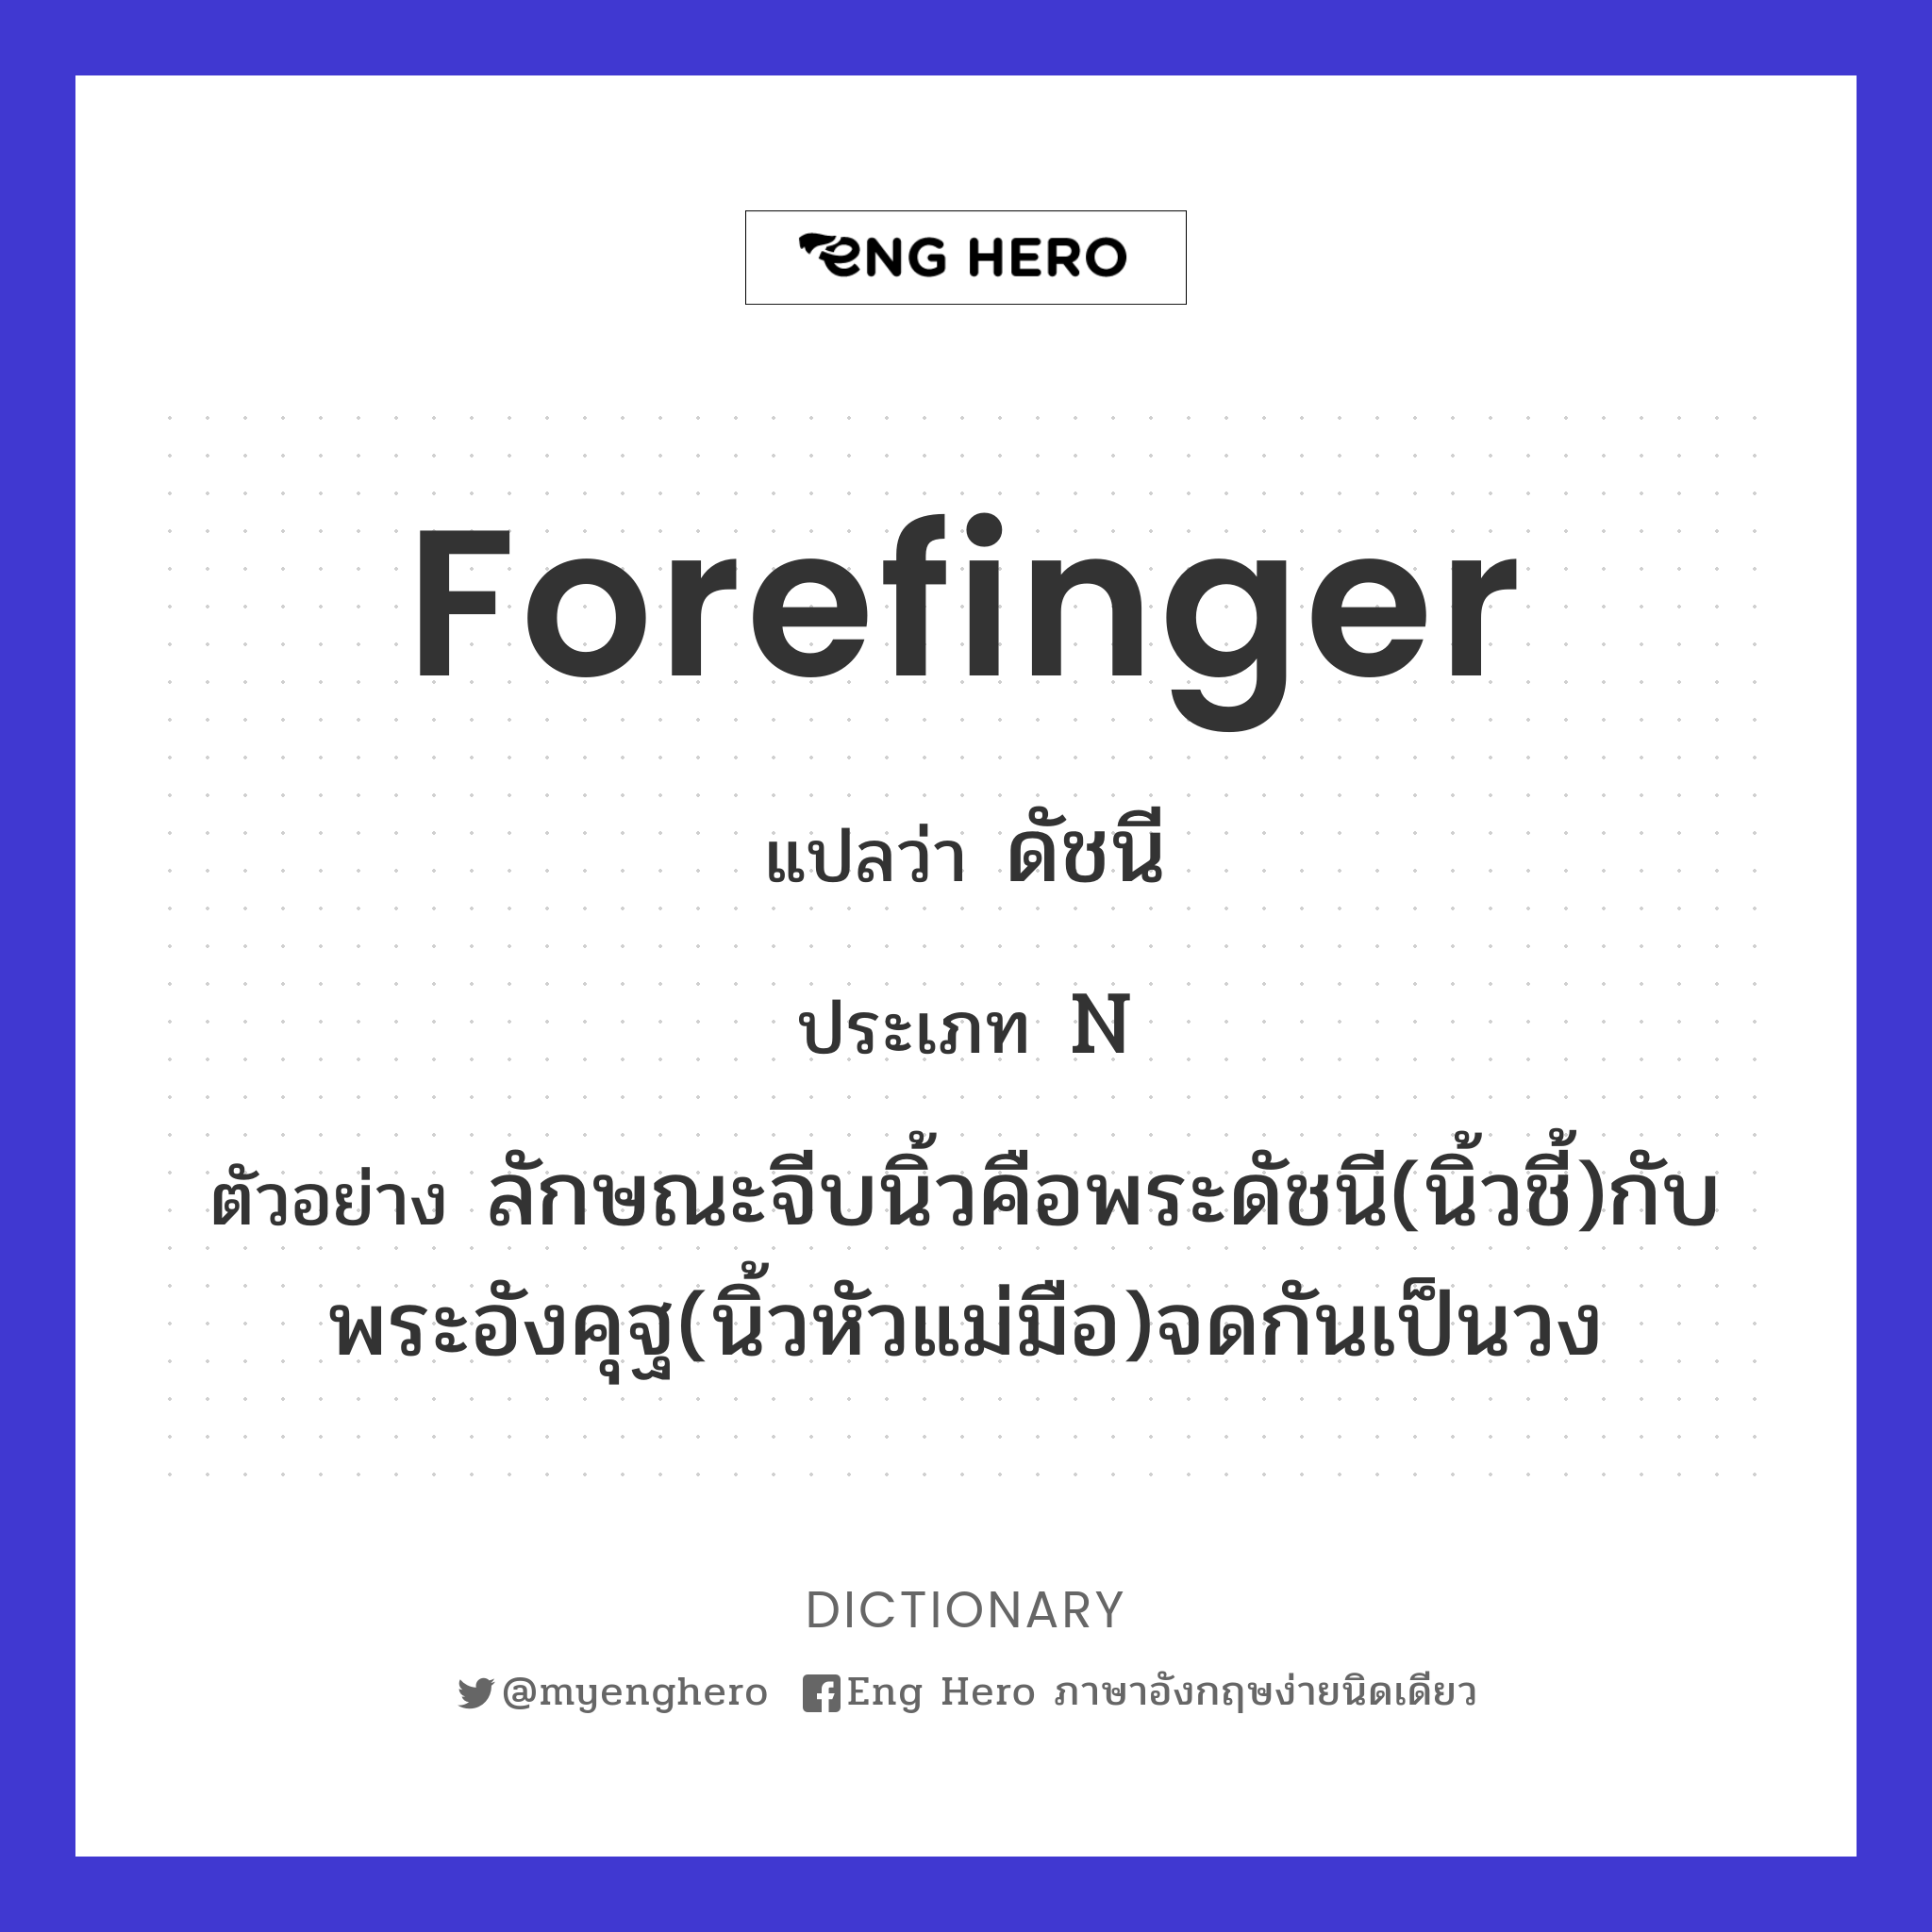 forefinger